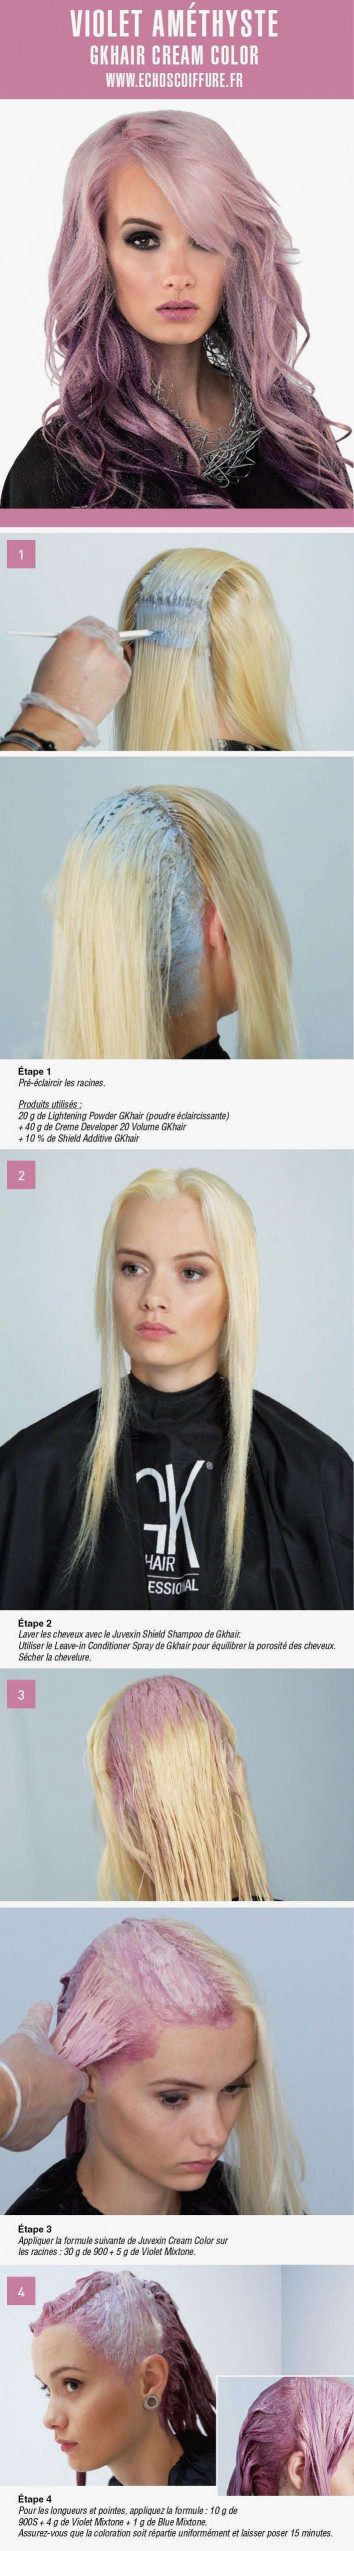 Punaise De Lit Dans Les Cheveux Fraîche Application Changer Couleur Cheveux Cosmopolitan France Dans L App